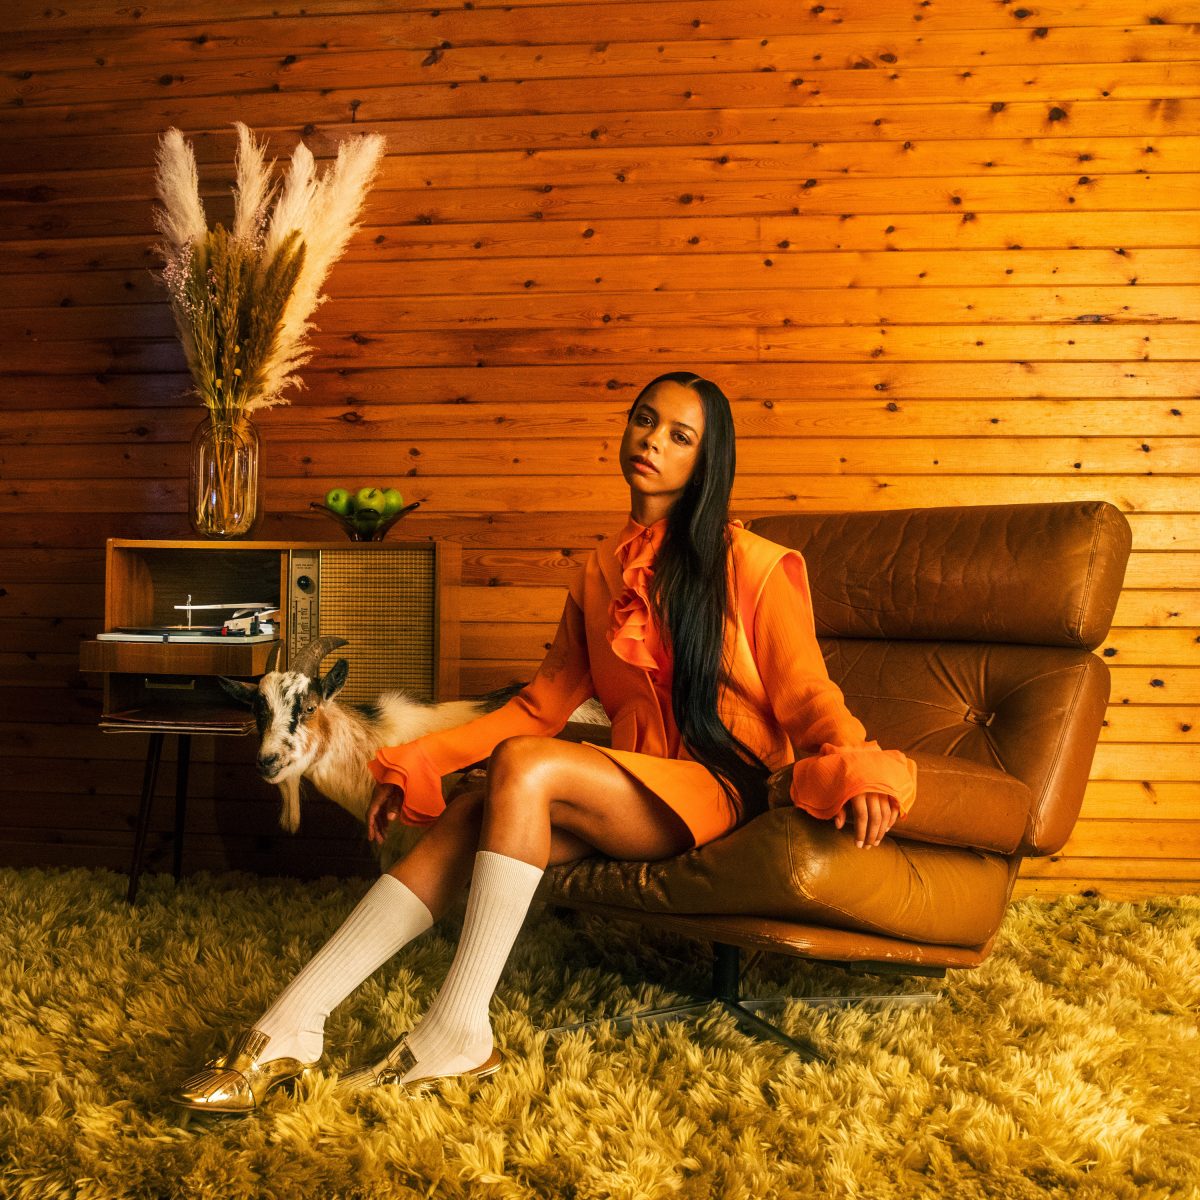 tsha regresa con giving up feat mafro y anuncia su album debut capricorn sun unnamed 2